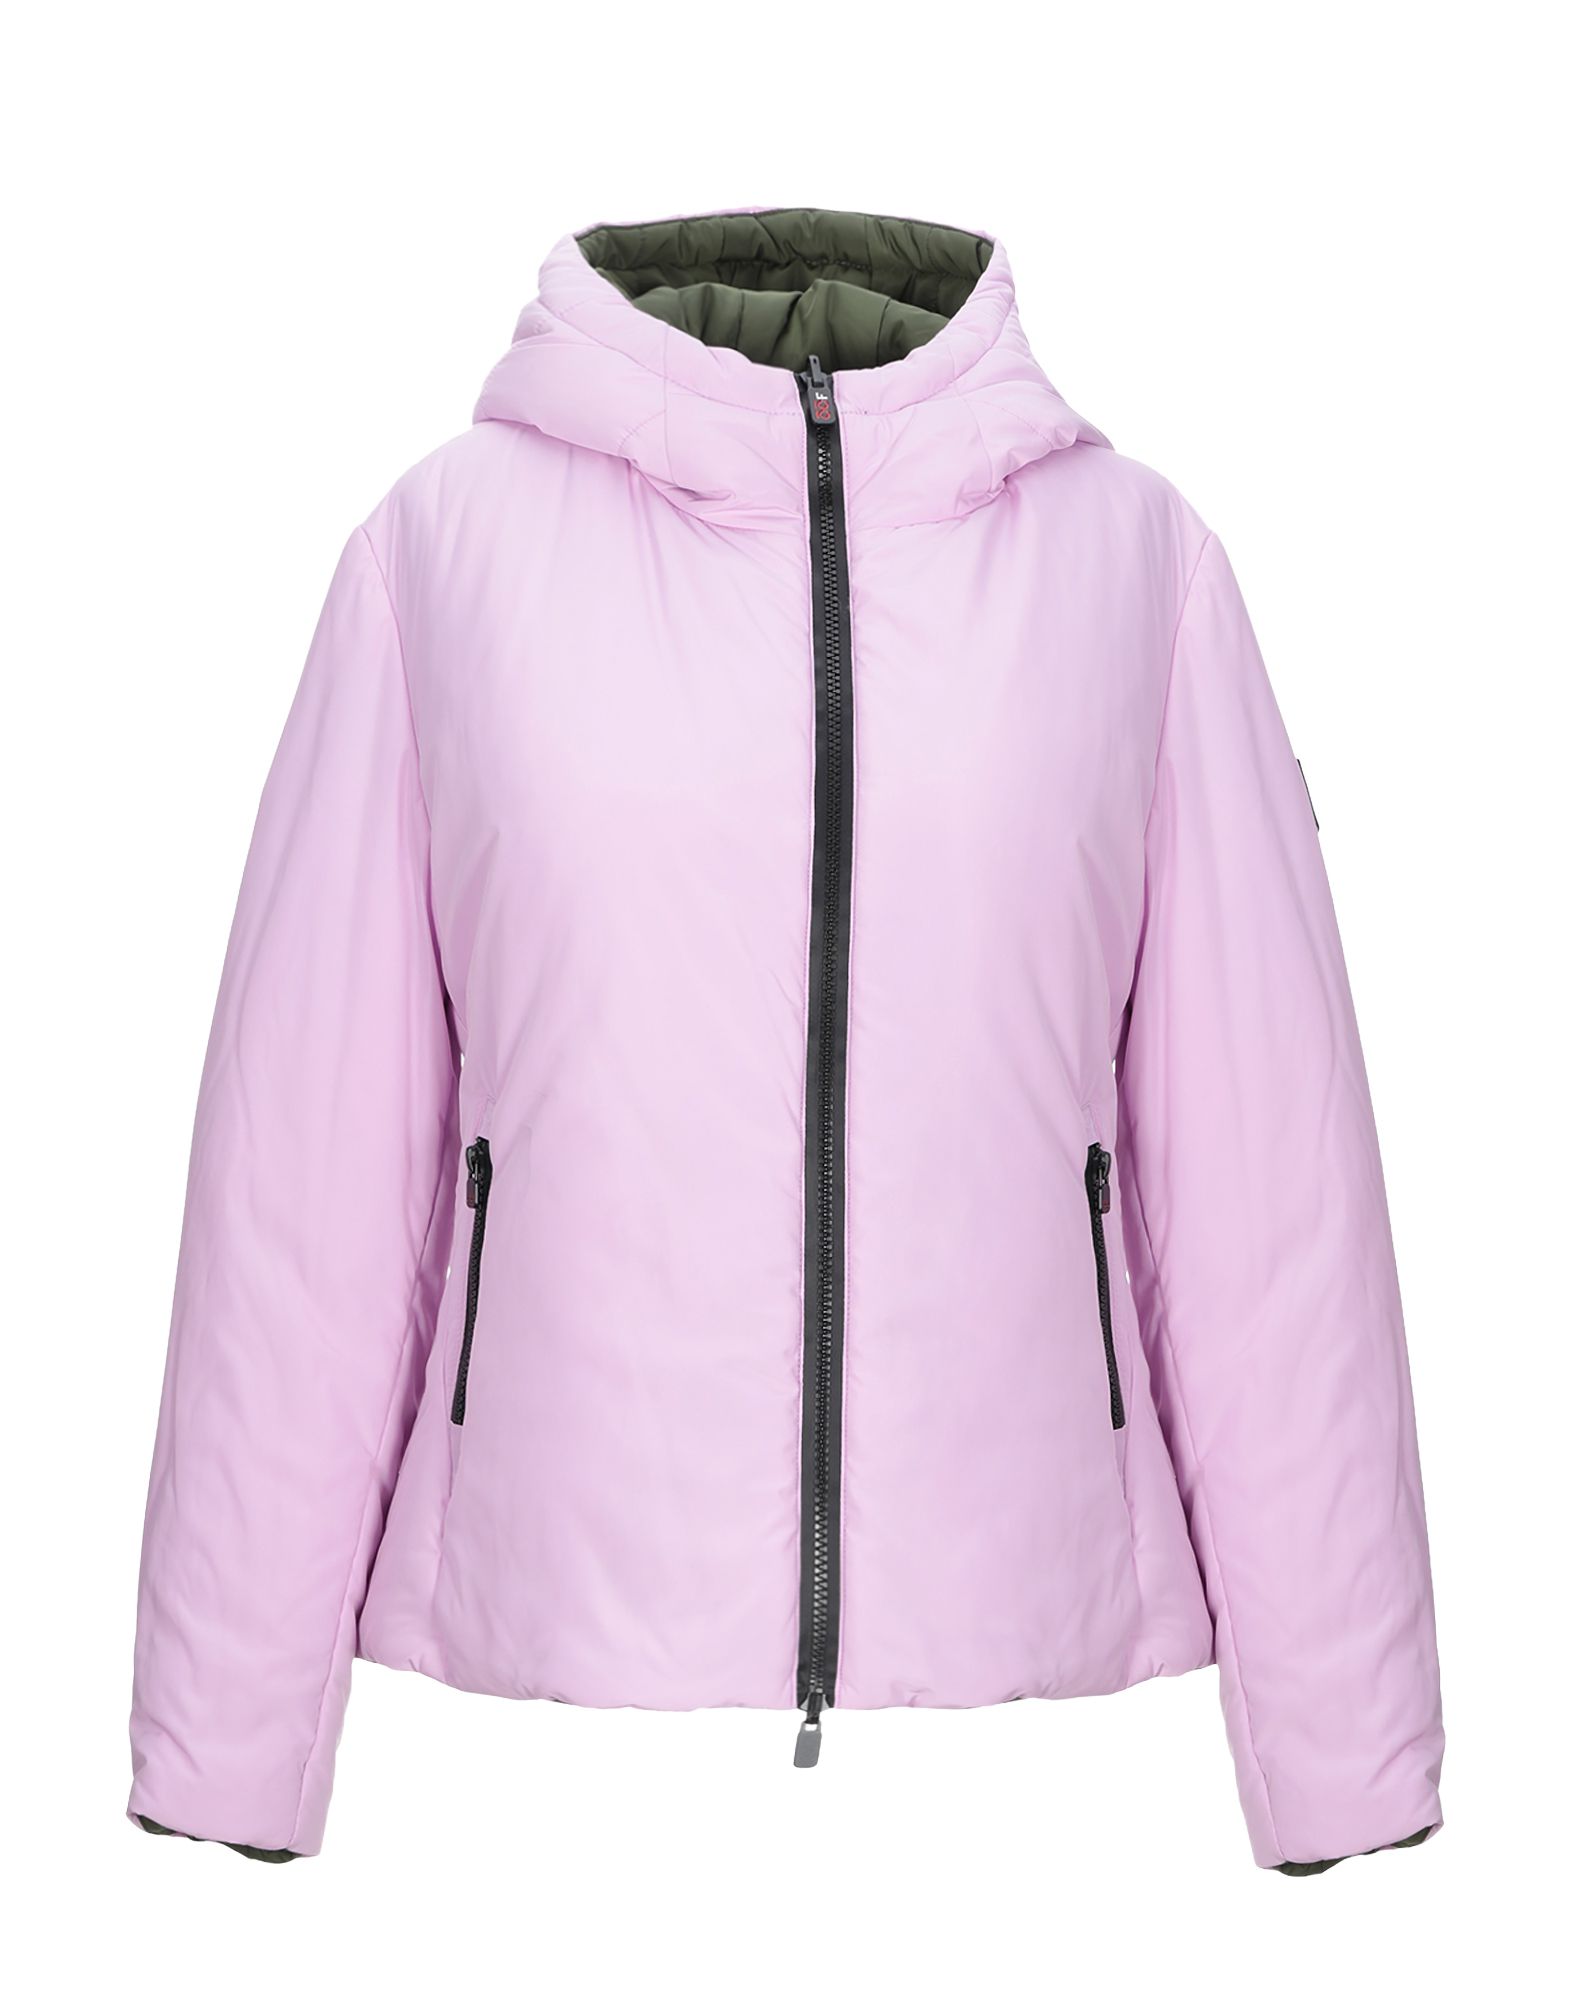 Куртка  - Коричневый,Фиолетовый цвет